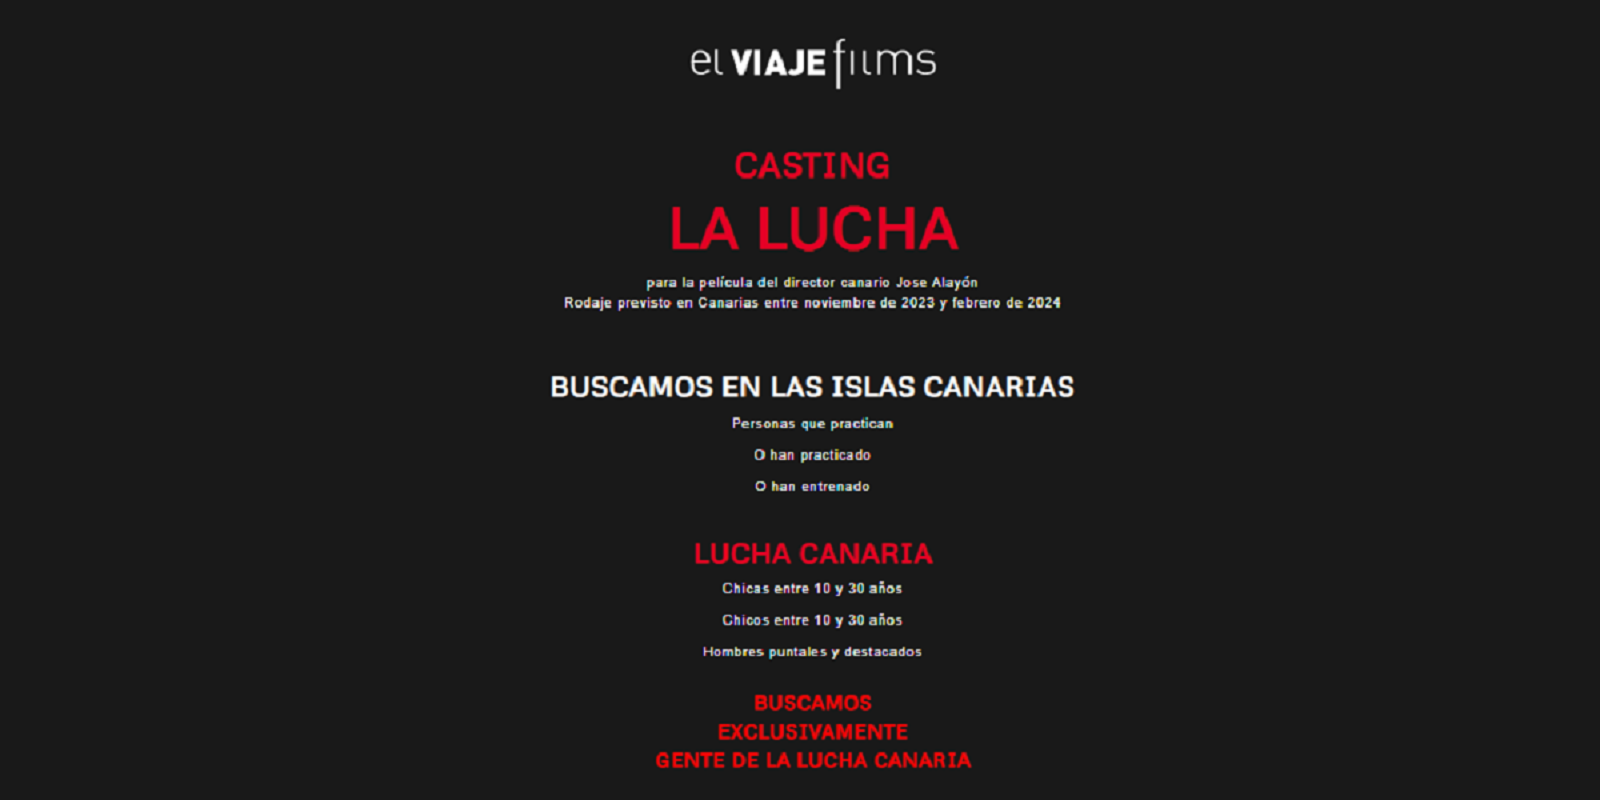 El anuncio publicado por la productora de cine El Viaje Films para la próxima película de José Alayón